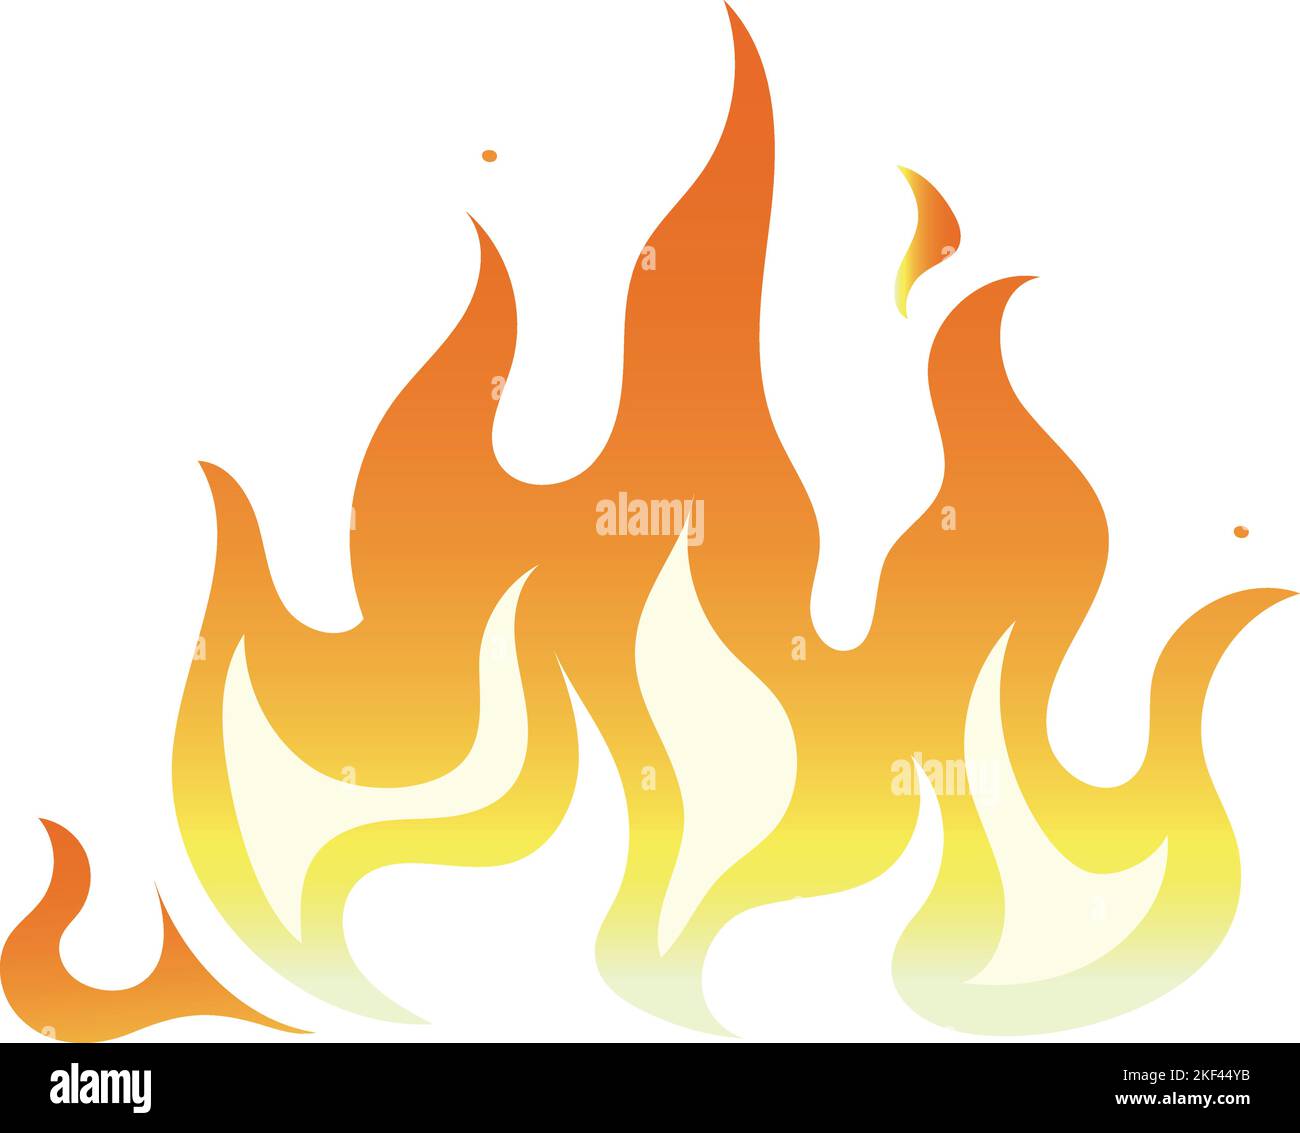 Feuerabziehbild. Symbol für Gradientenflamme. Brennsymbol Stock Vektor